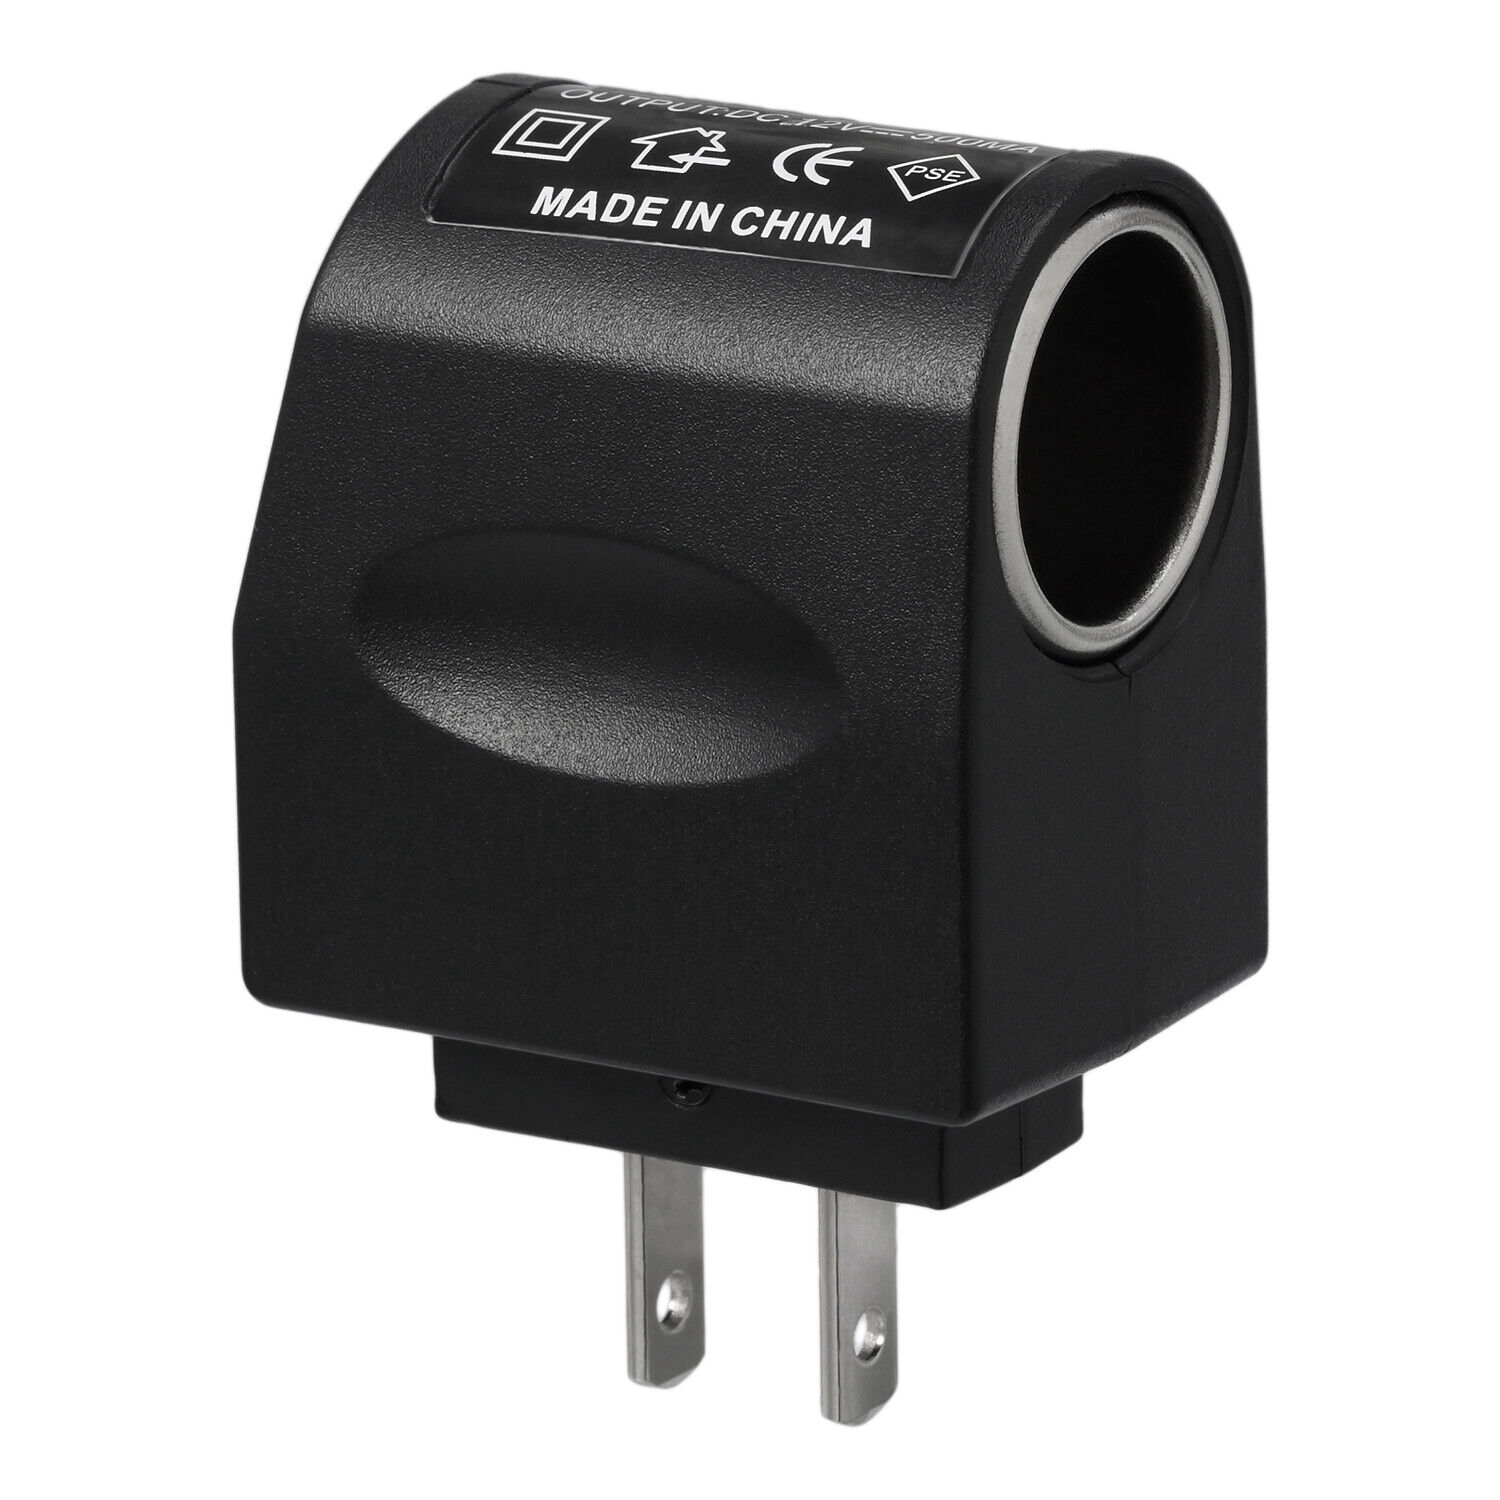 AC Wall Outlet To 12V DC Car Cigarette Lighter Converter Socket Adapter US Plug